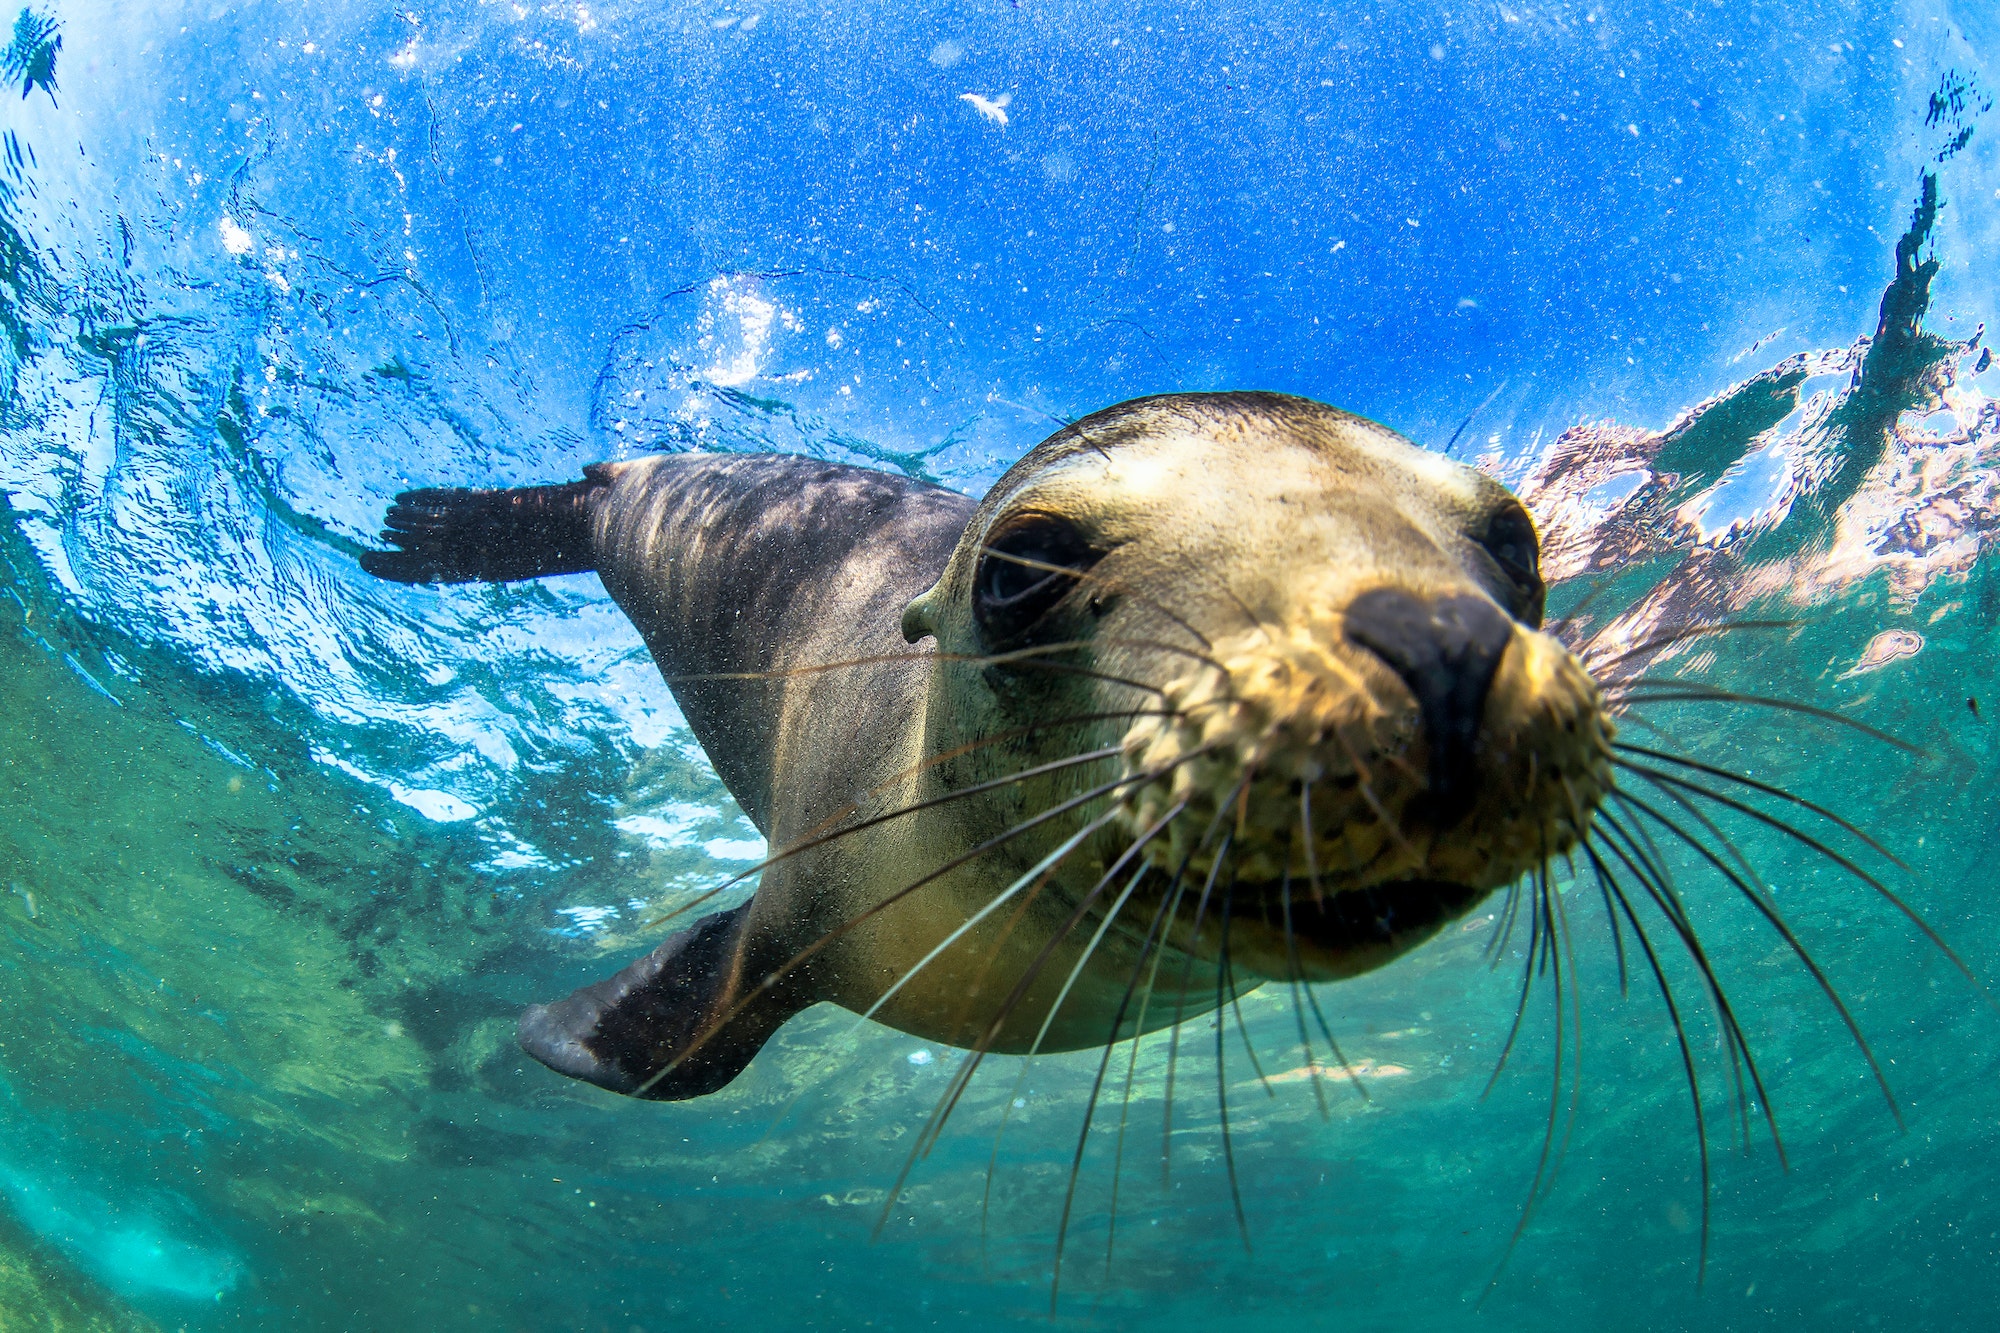 Galapagos fur seal (Arctocephalus galapagoensis) swimming at camera in tropical underwaters